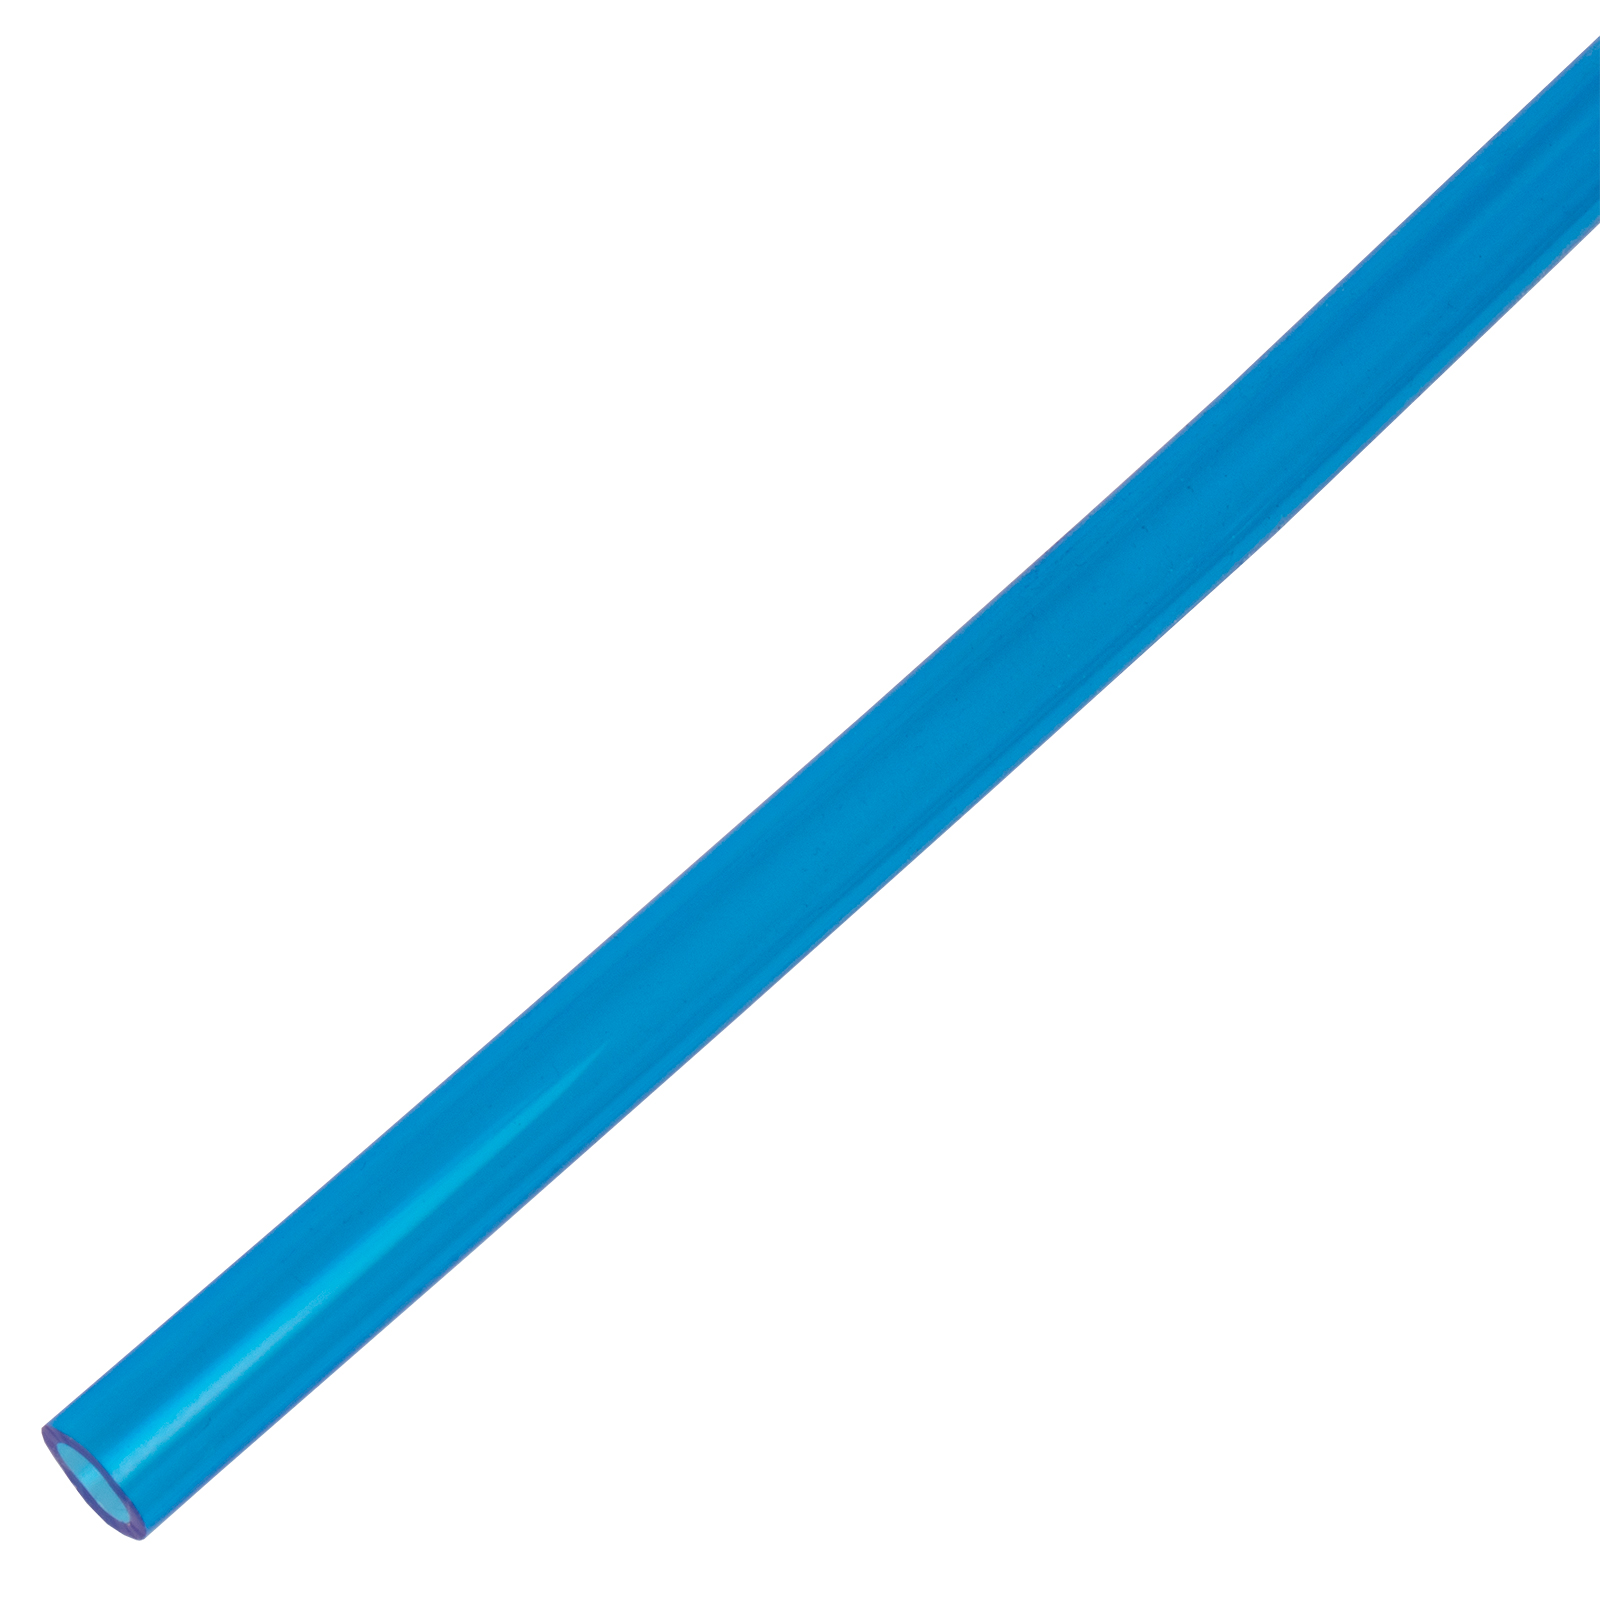 Druckluftschlauch, PU blau 6x4 für Dosier- und Steuergeräte 